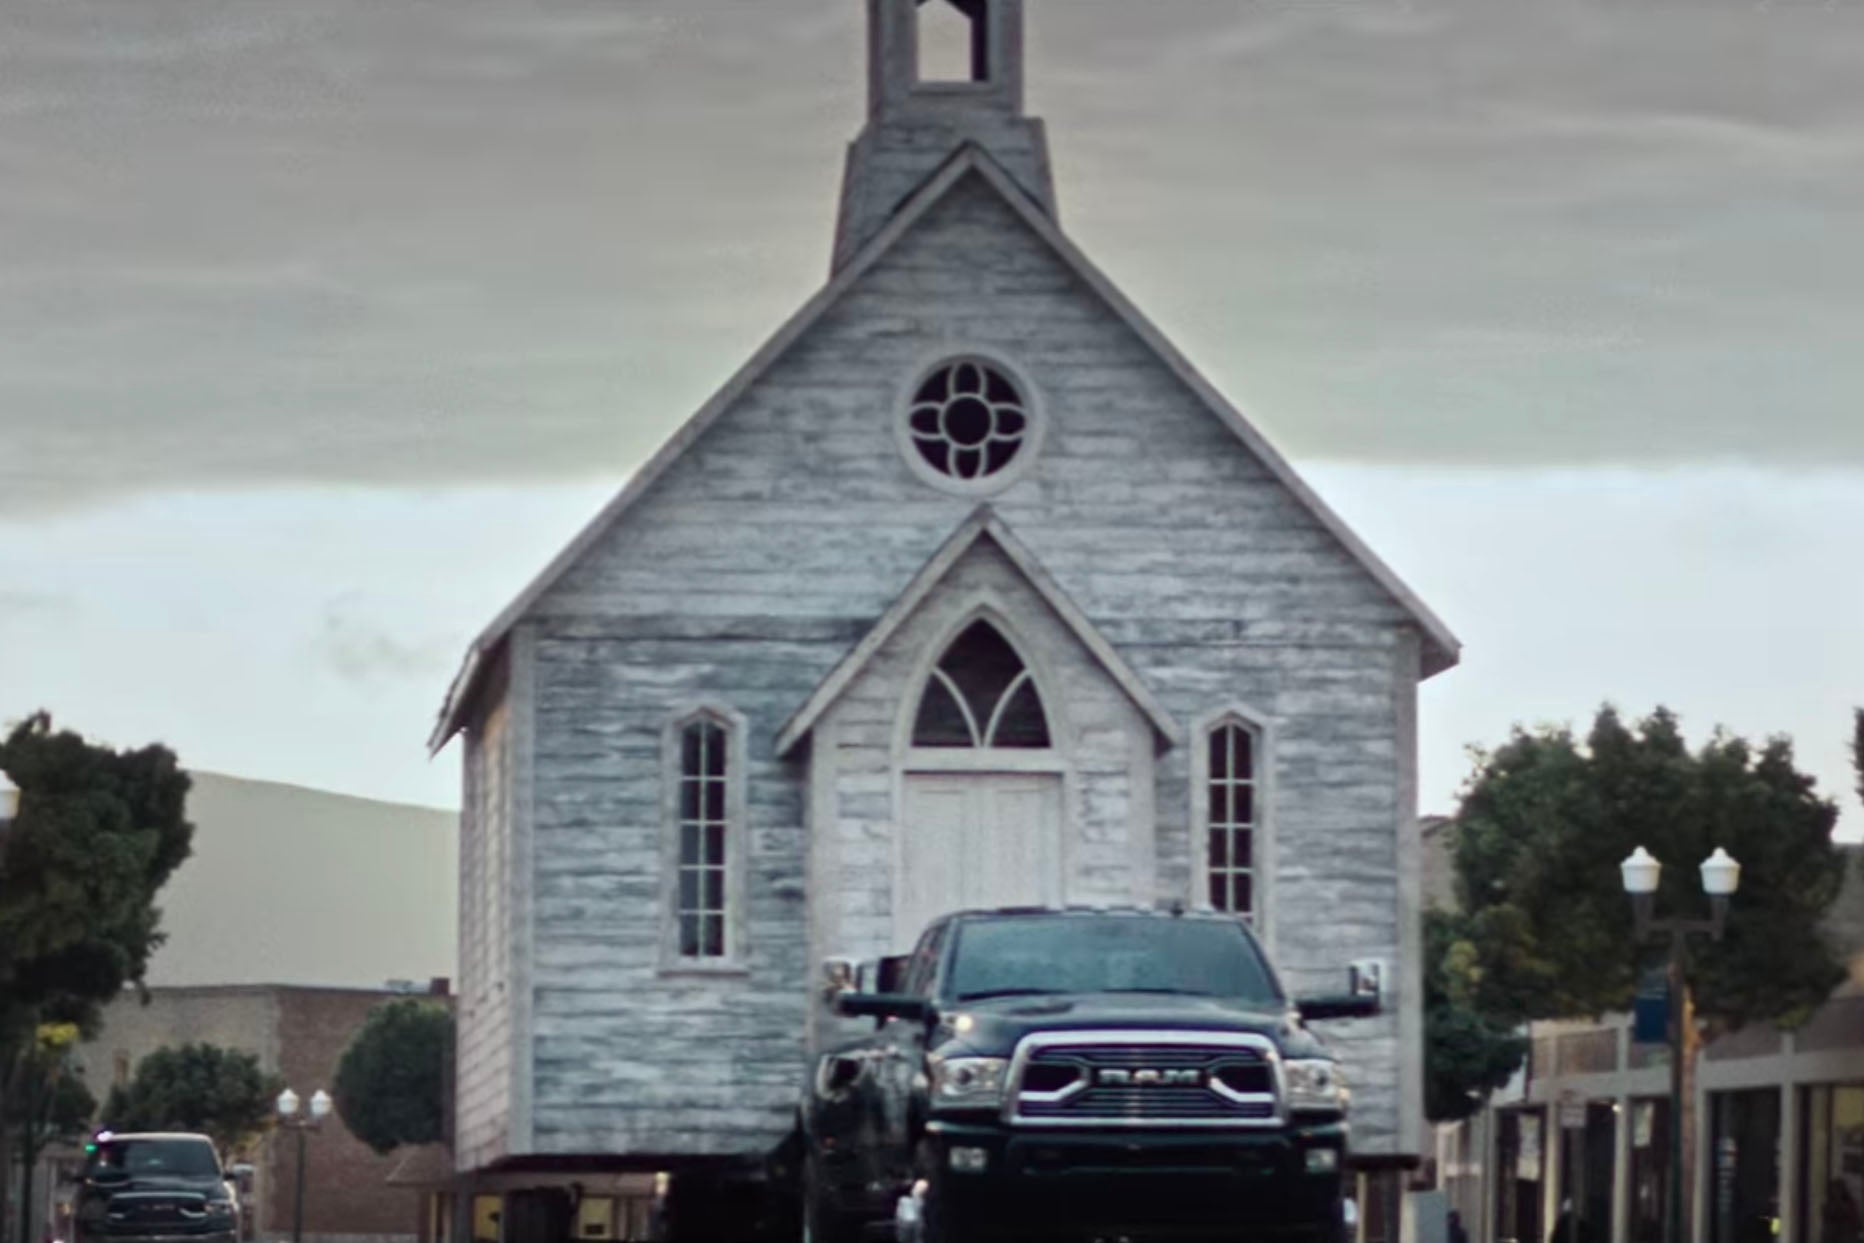 A Ram truck pulling a church.